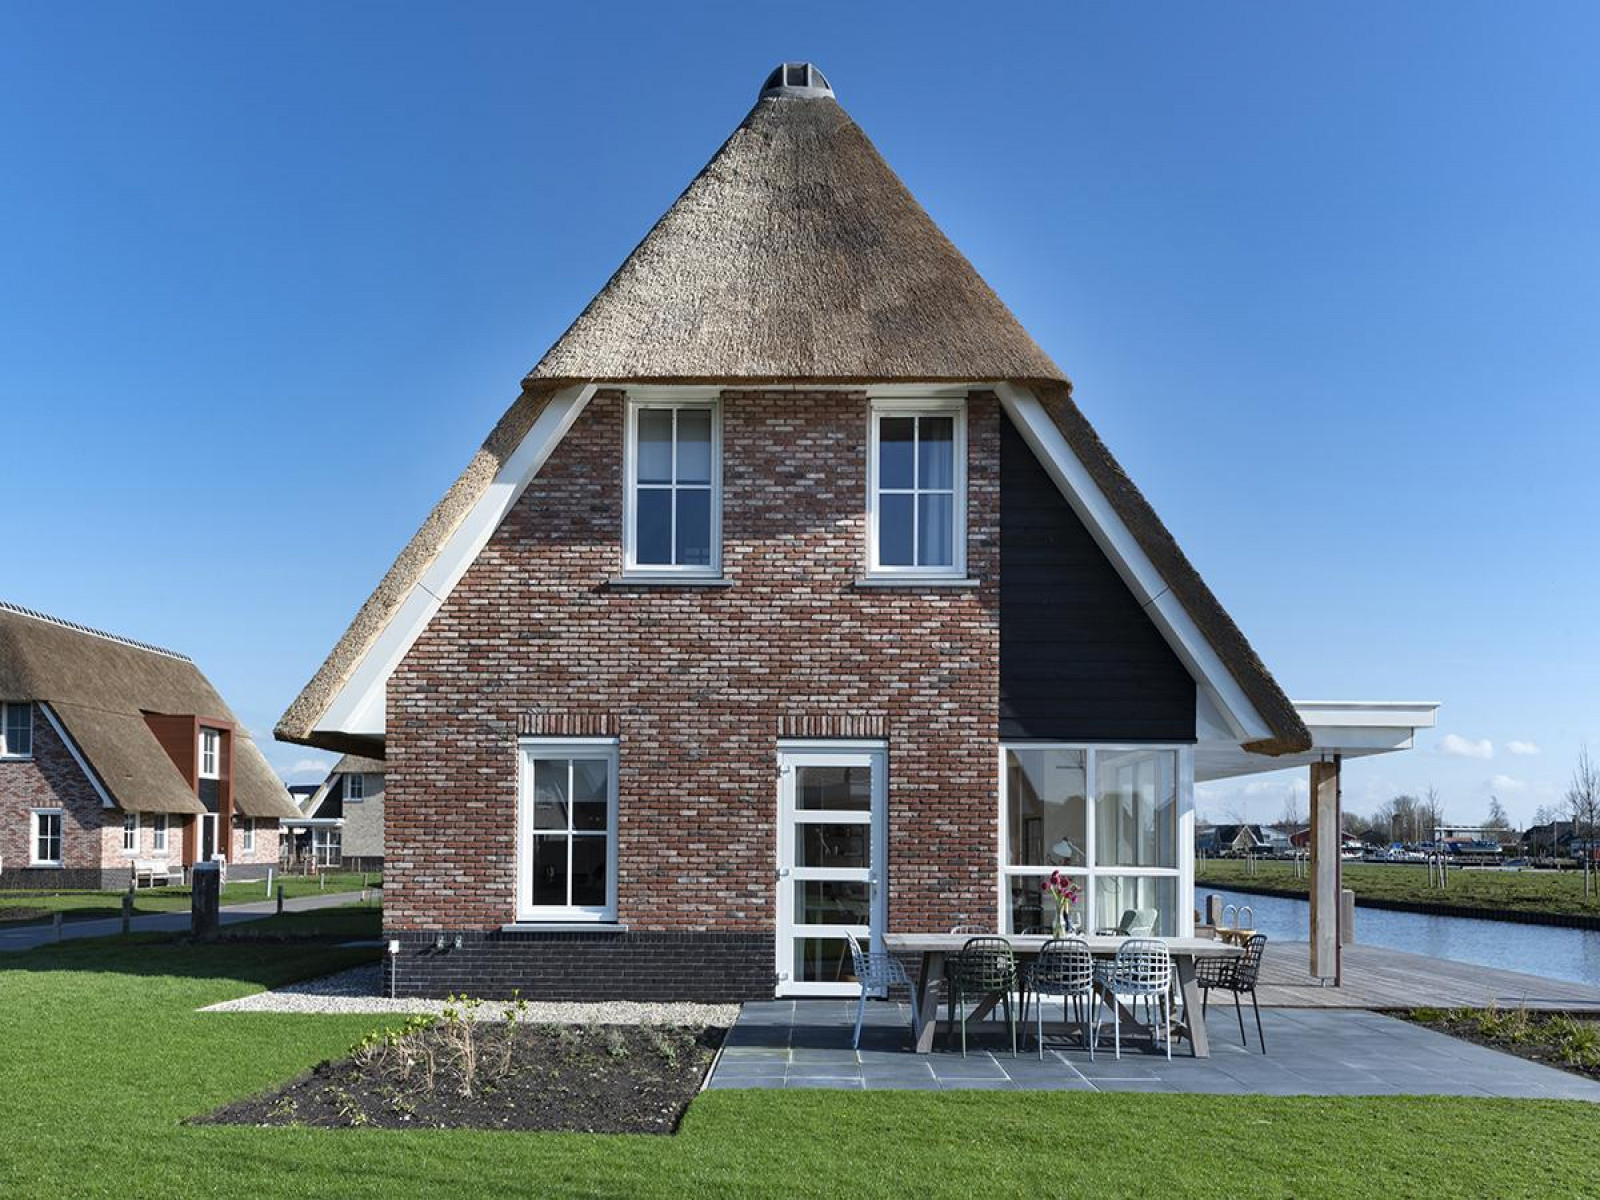 Luxe 8 persoons villa aan het Tjeukemeer in Friesland